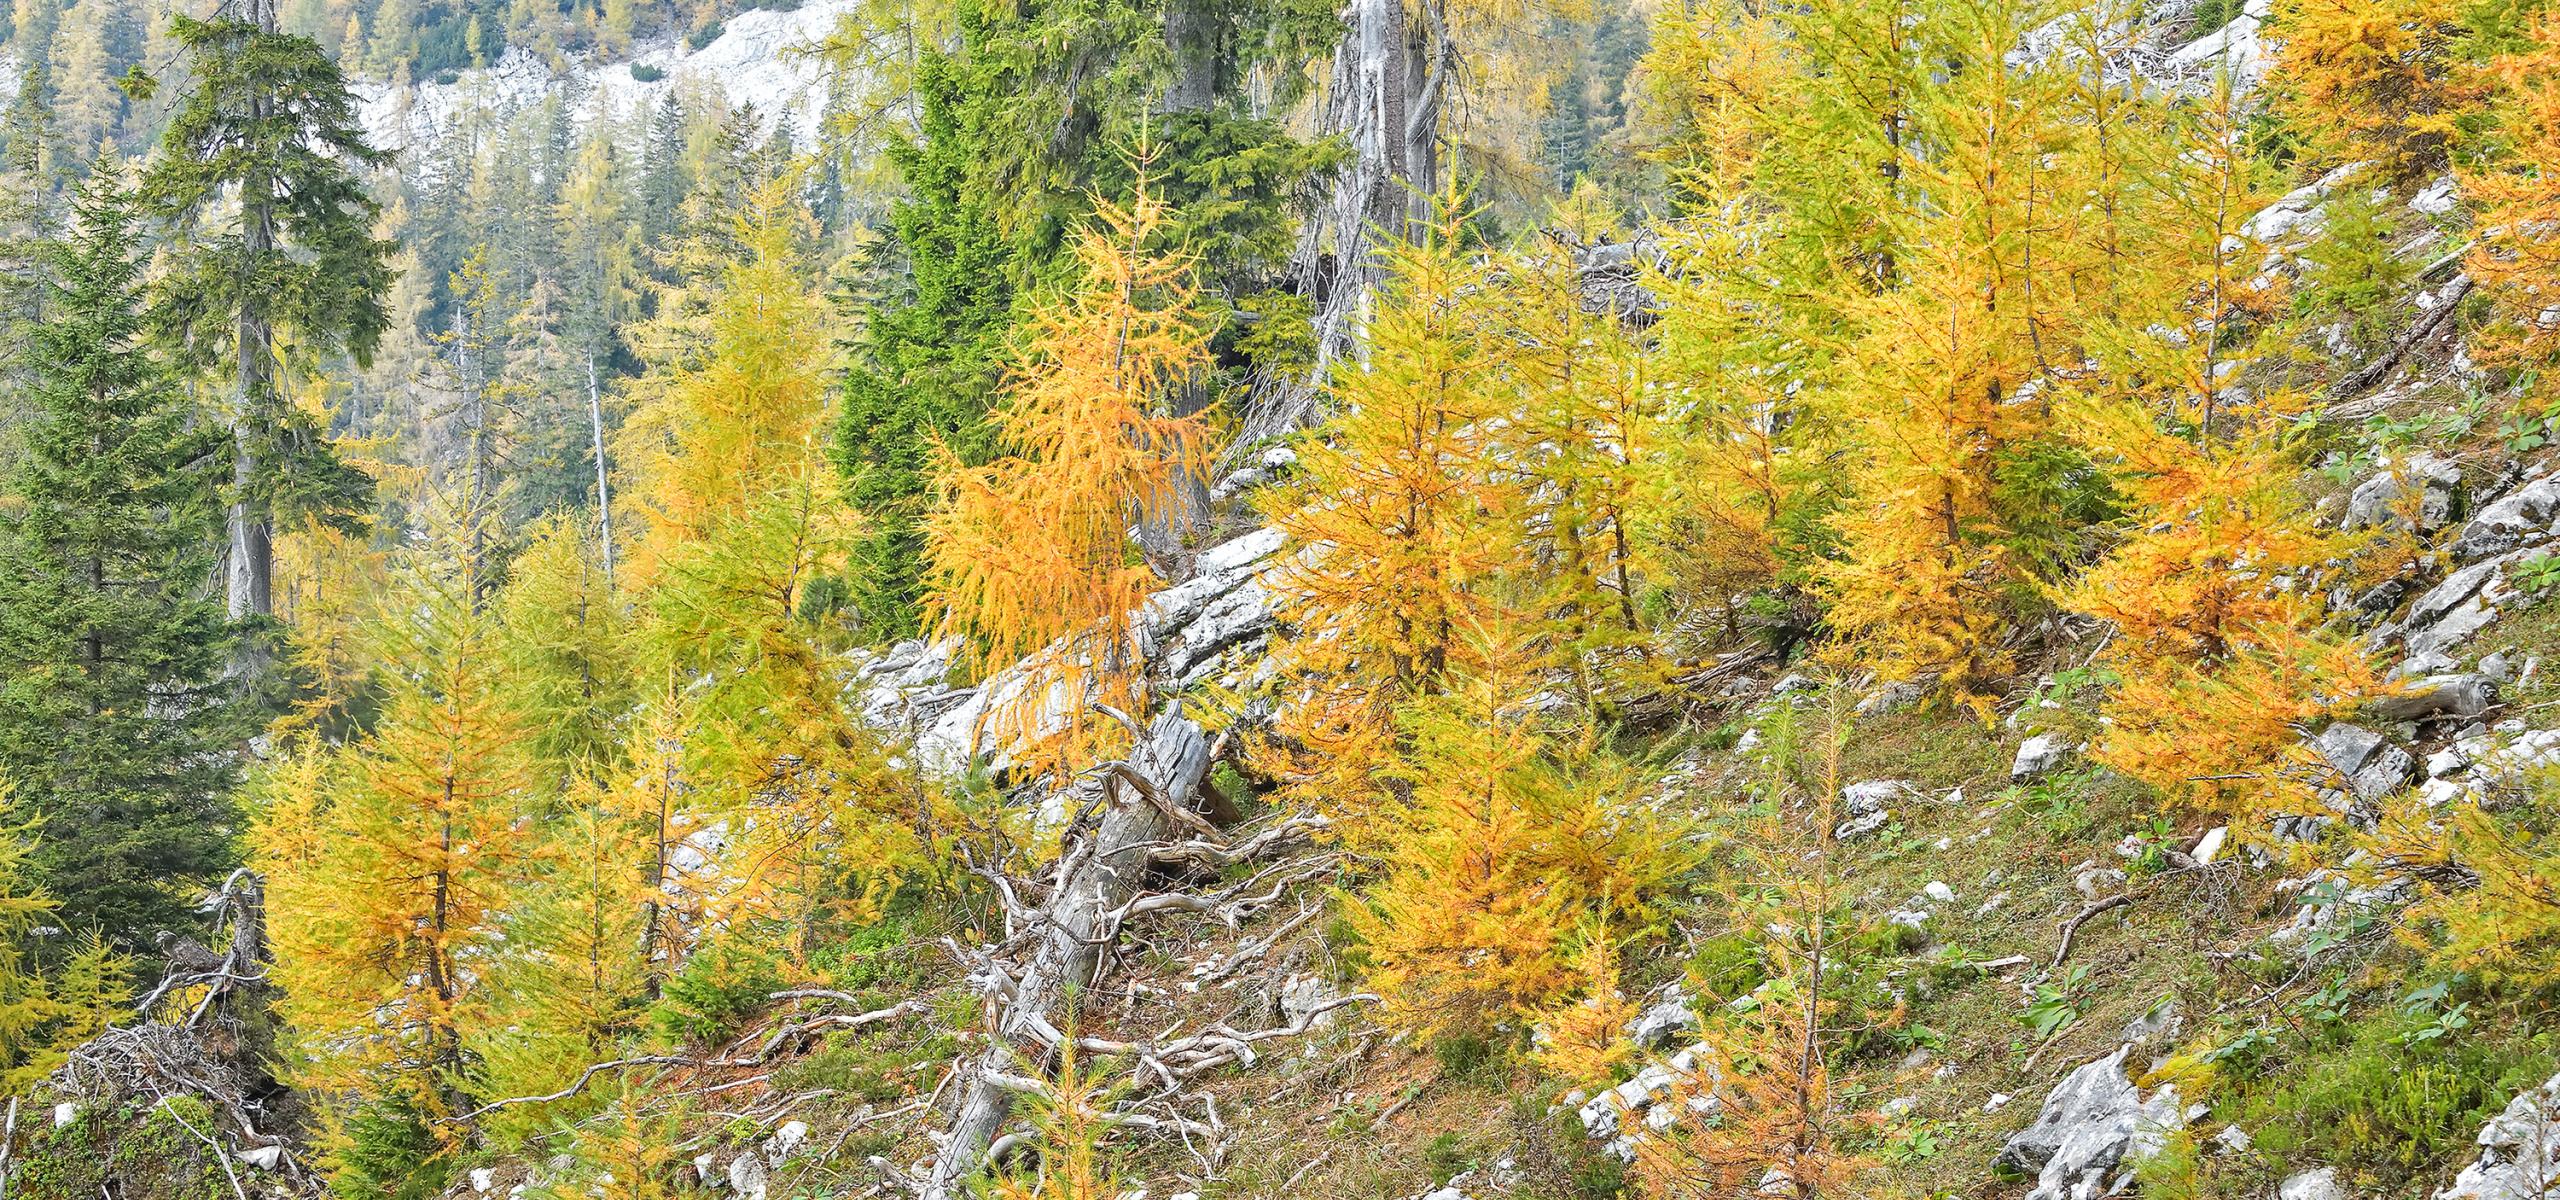 Modříny s jasně žlutými podzimními barvami na strmém horském svahu